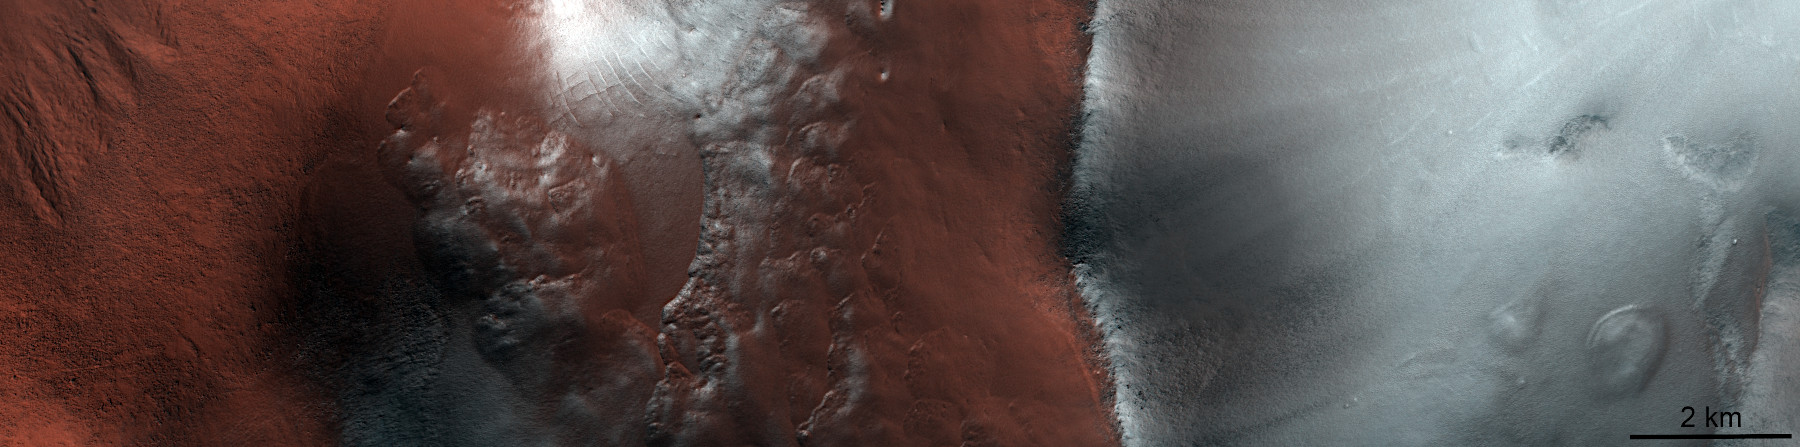 火星の春 氷がなくなった地域と霜が残る地域 アストロピクス